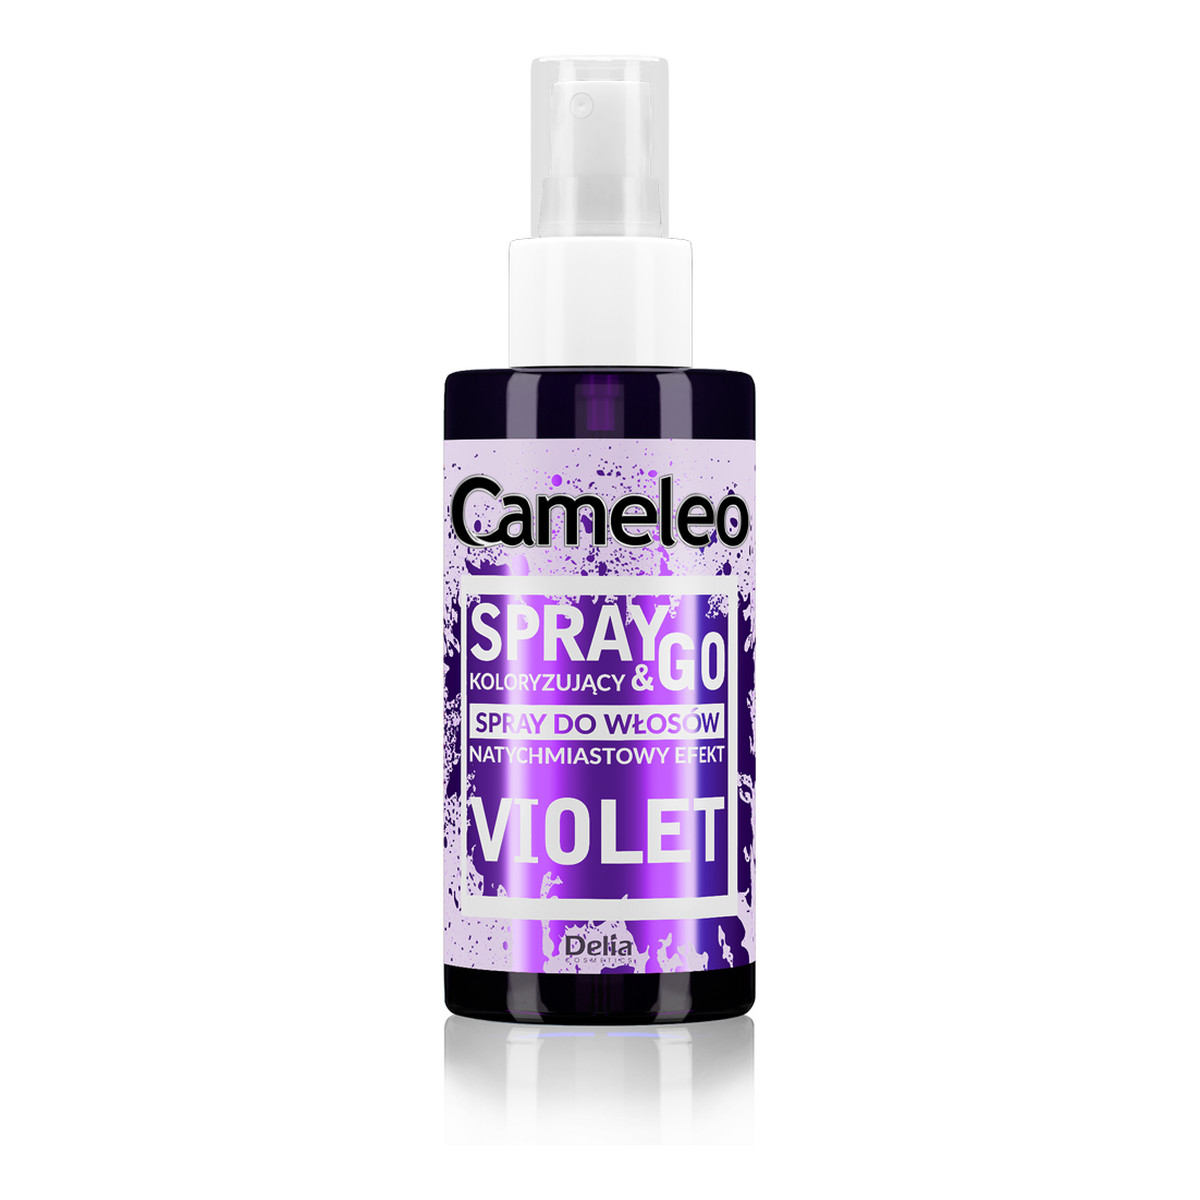 Cameleo Spray & Go Spray koloryzujący do włosów 150ml